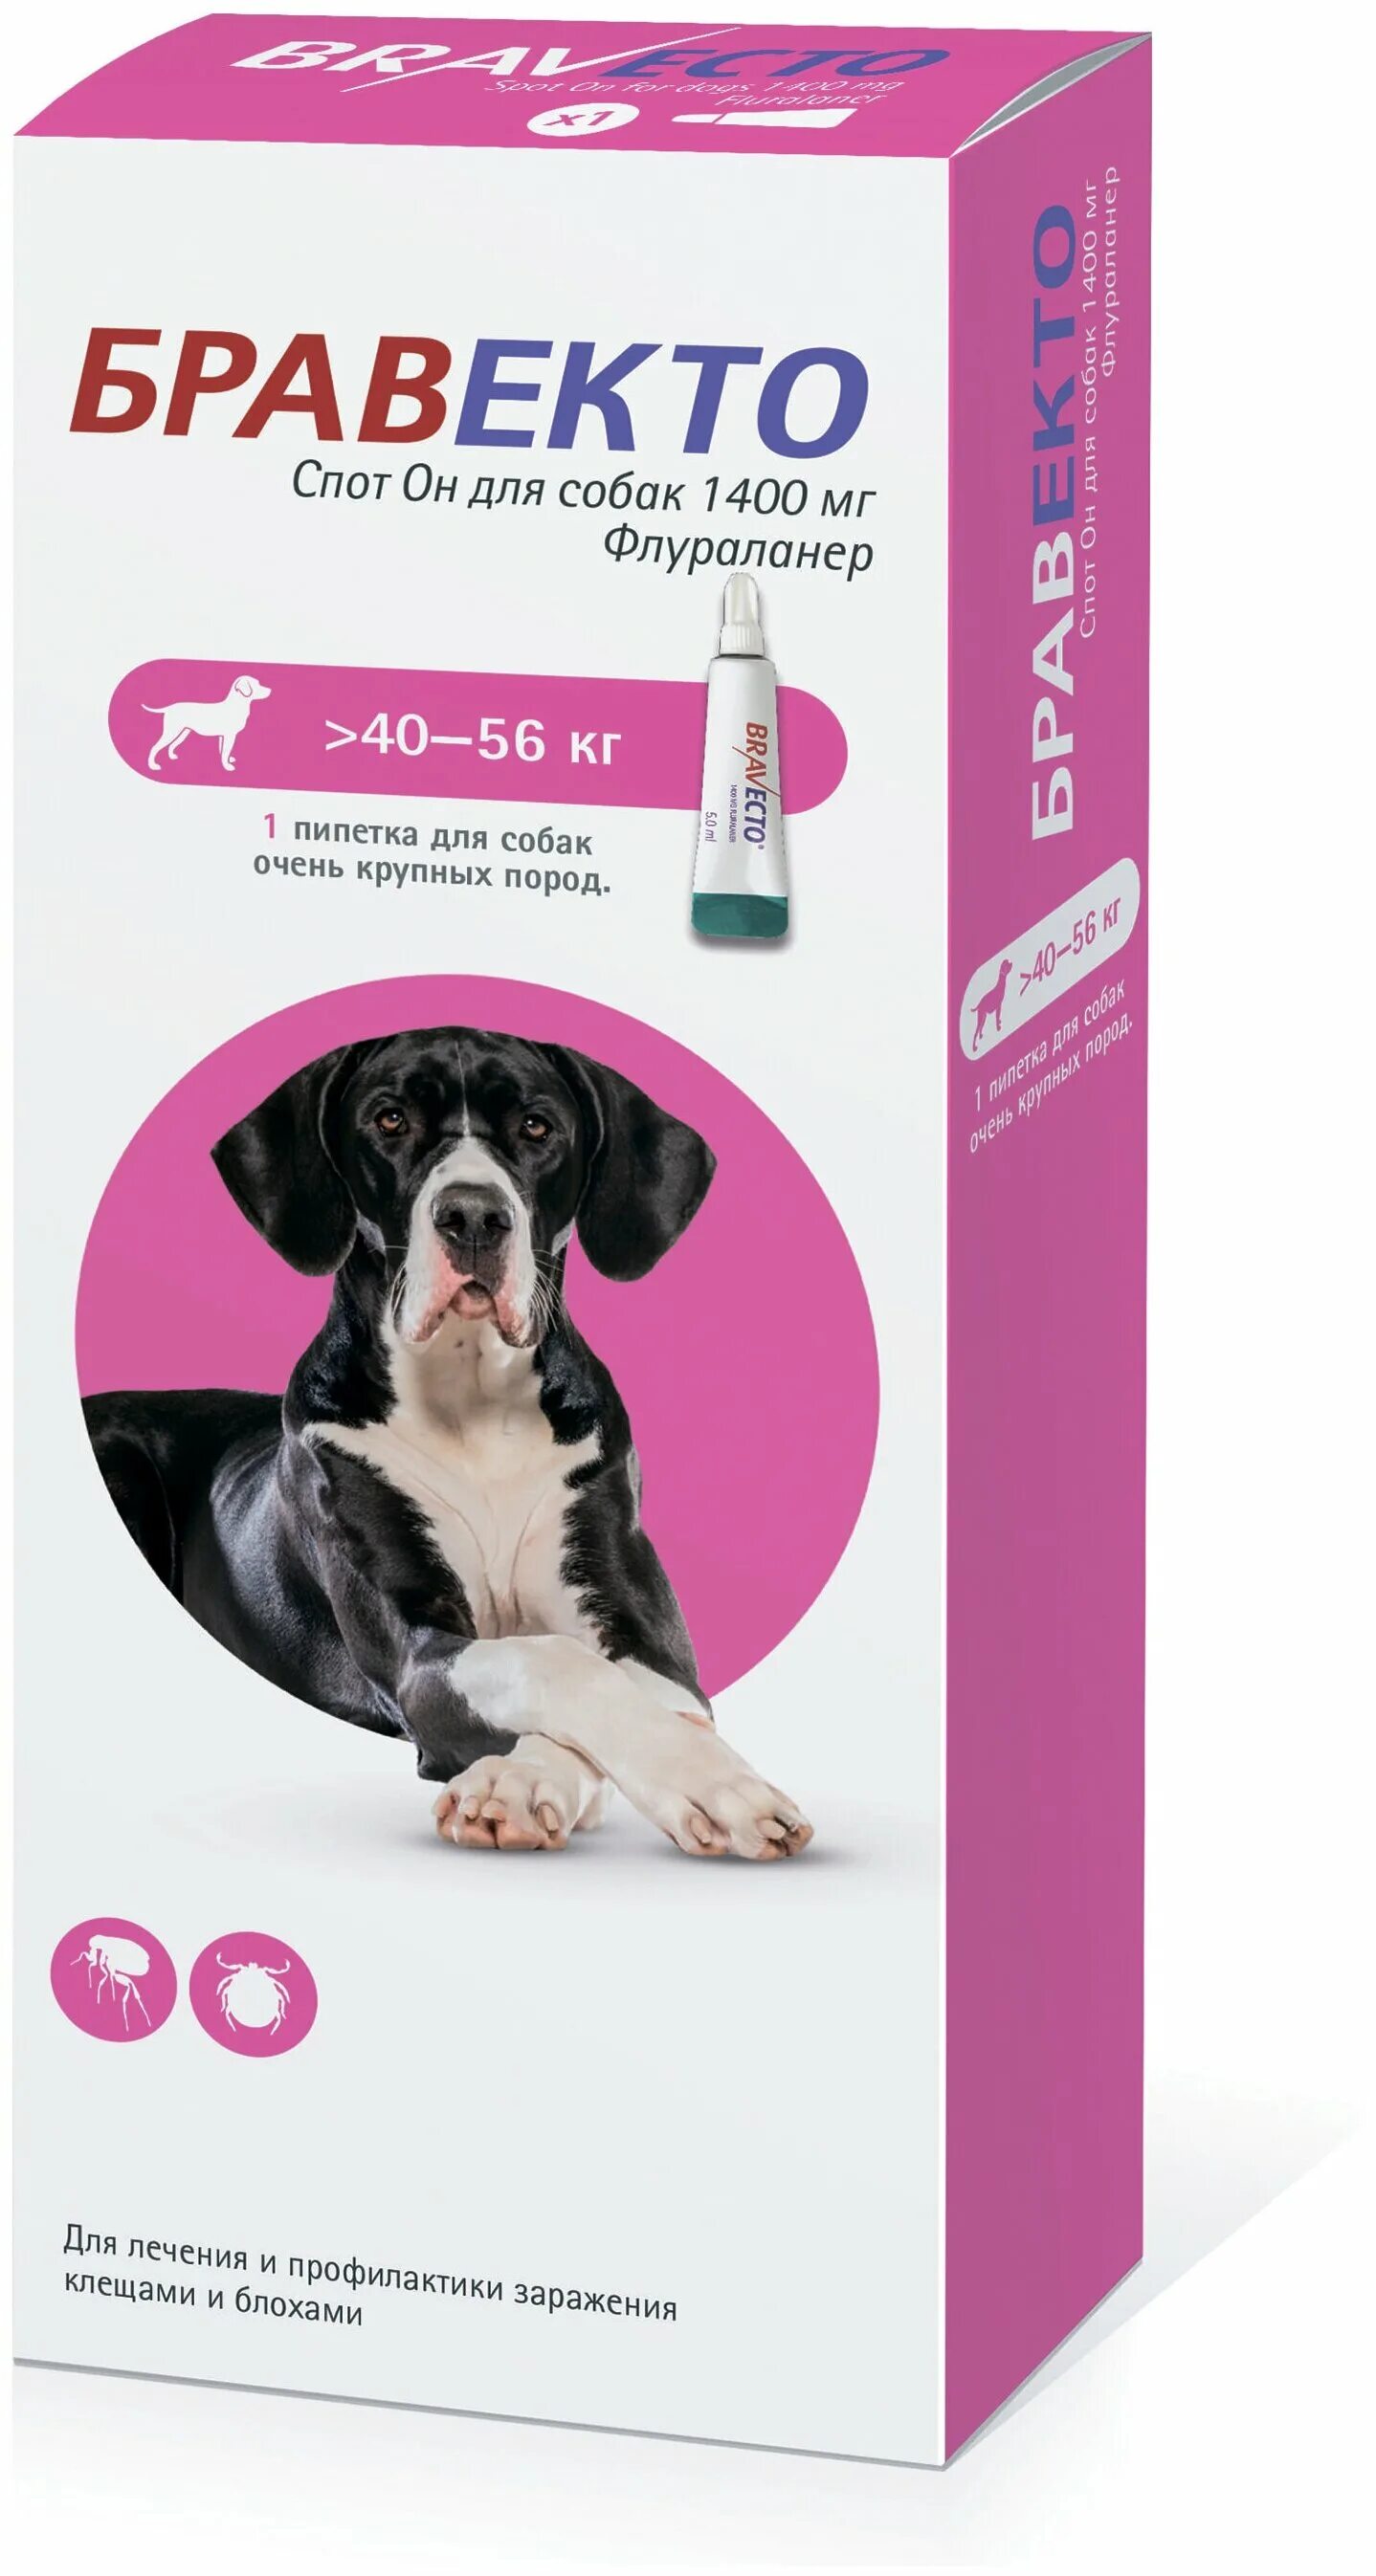 Средство от клещей для собак бравекто. Бравекто спот он для собак (1400 мг) 40-56 кг. Бравекто (MSD animal Health) капли от блох и клещей спот он для собак 4,5-10 кг. Бравекто для собак 10-20 капли. Бравекто для собак 1400 мг 40-56.